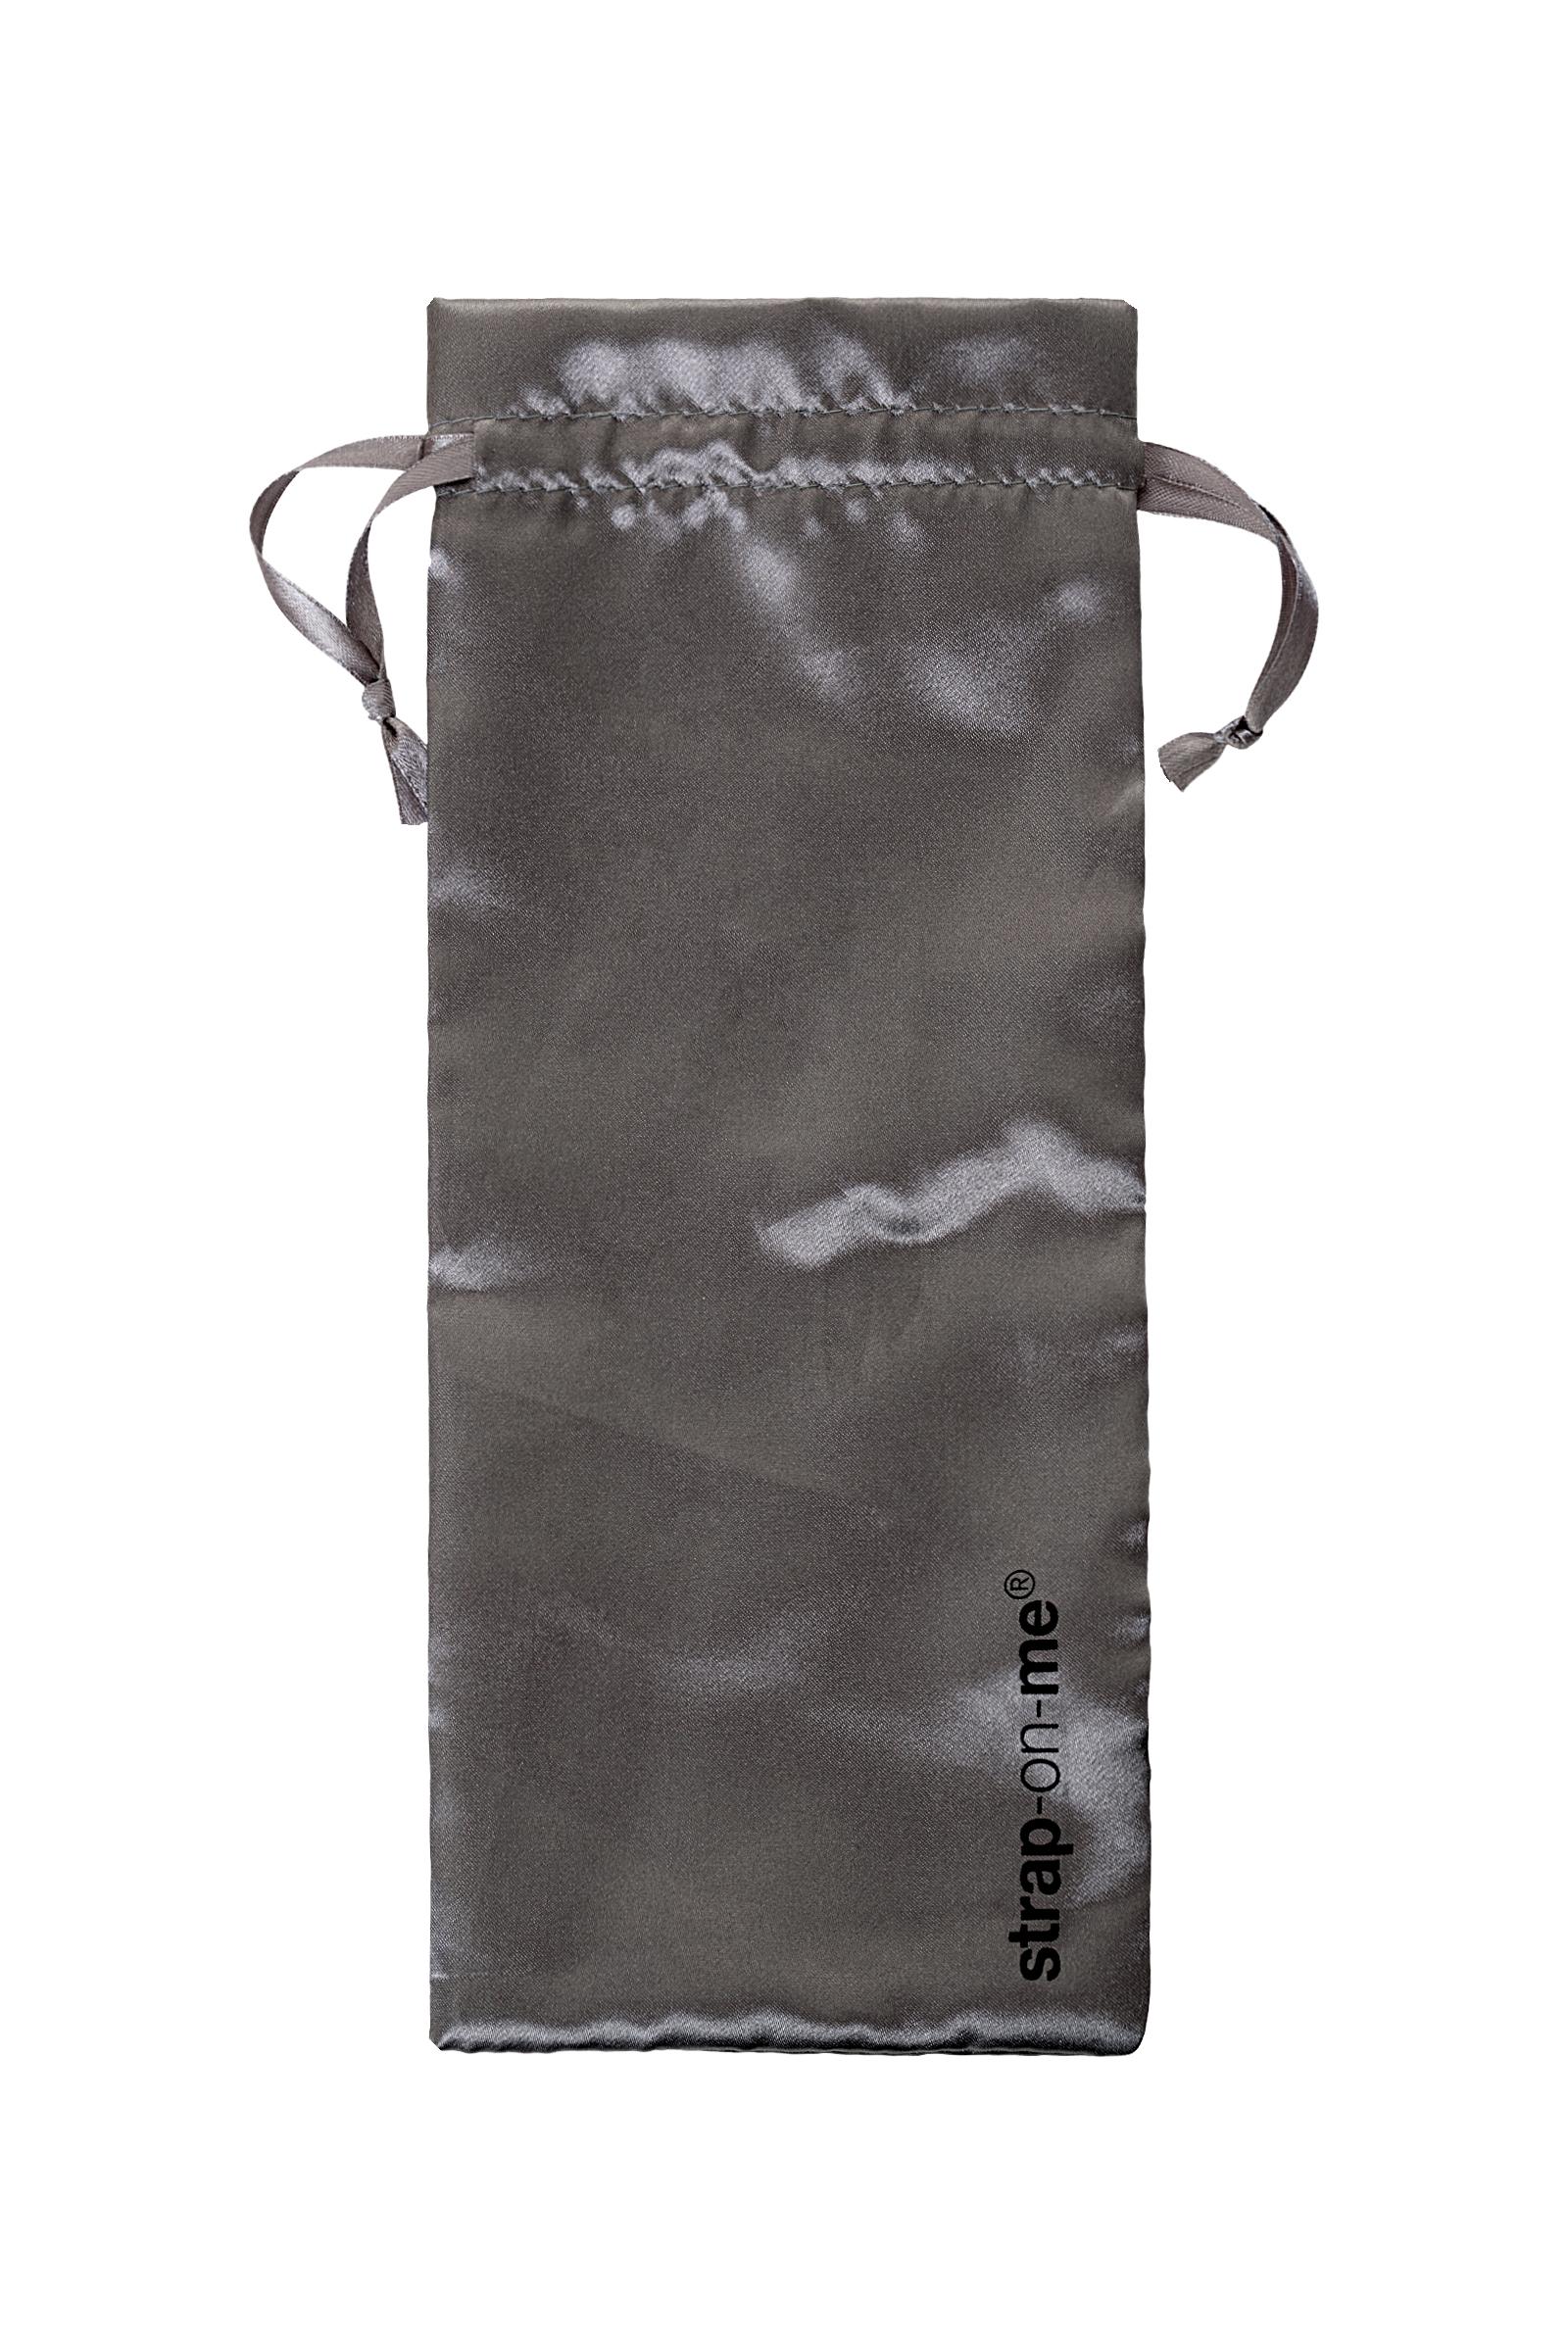 Безремневой нереалистичный страпон Strap-on-me, M, силикон, черный, 24,5 см Vestalshop.ru - Изображение 4